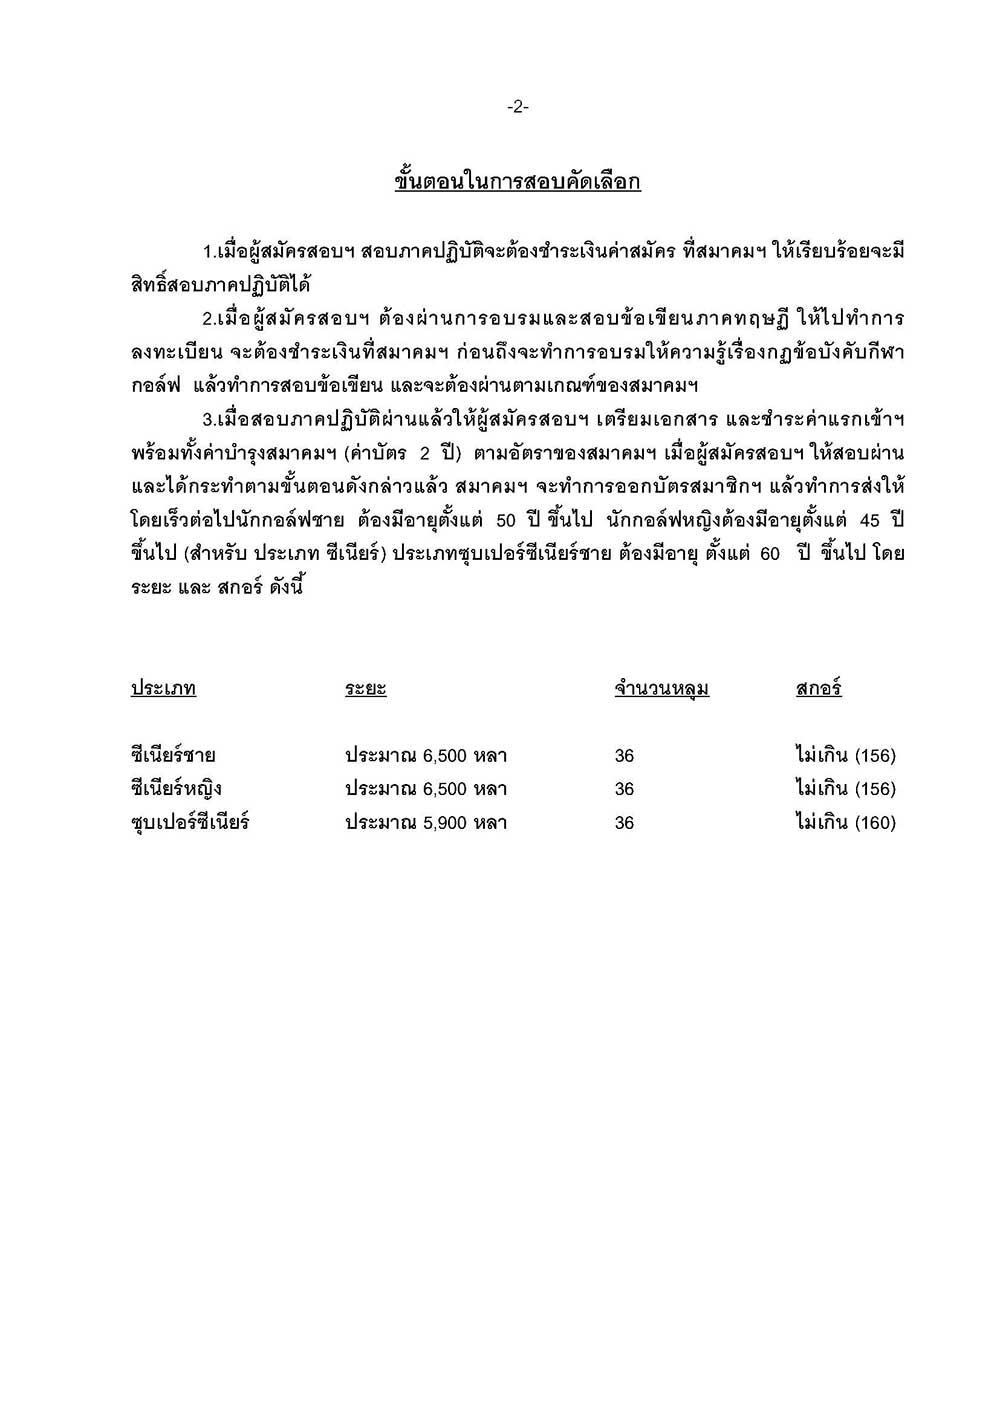 หนงสอสอบเปนภาษาไทย อาทตยา Page 2